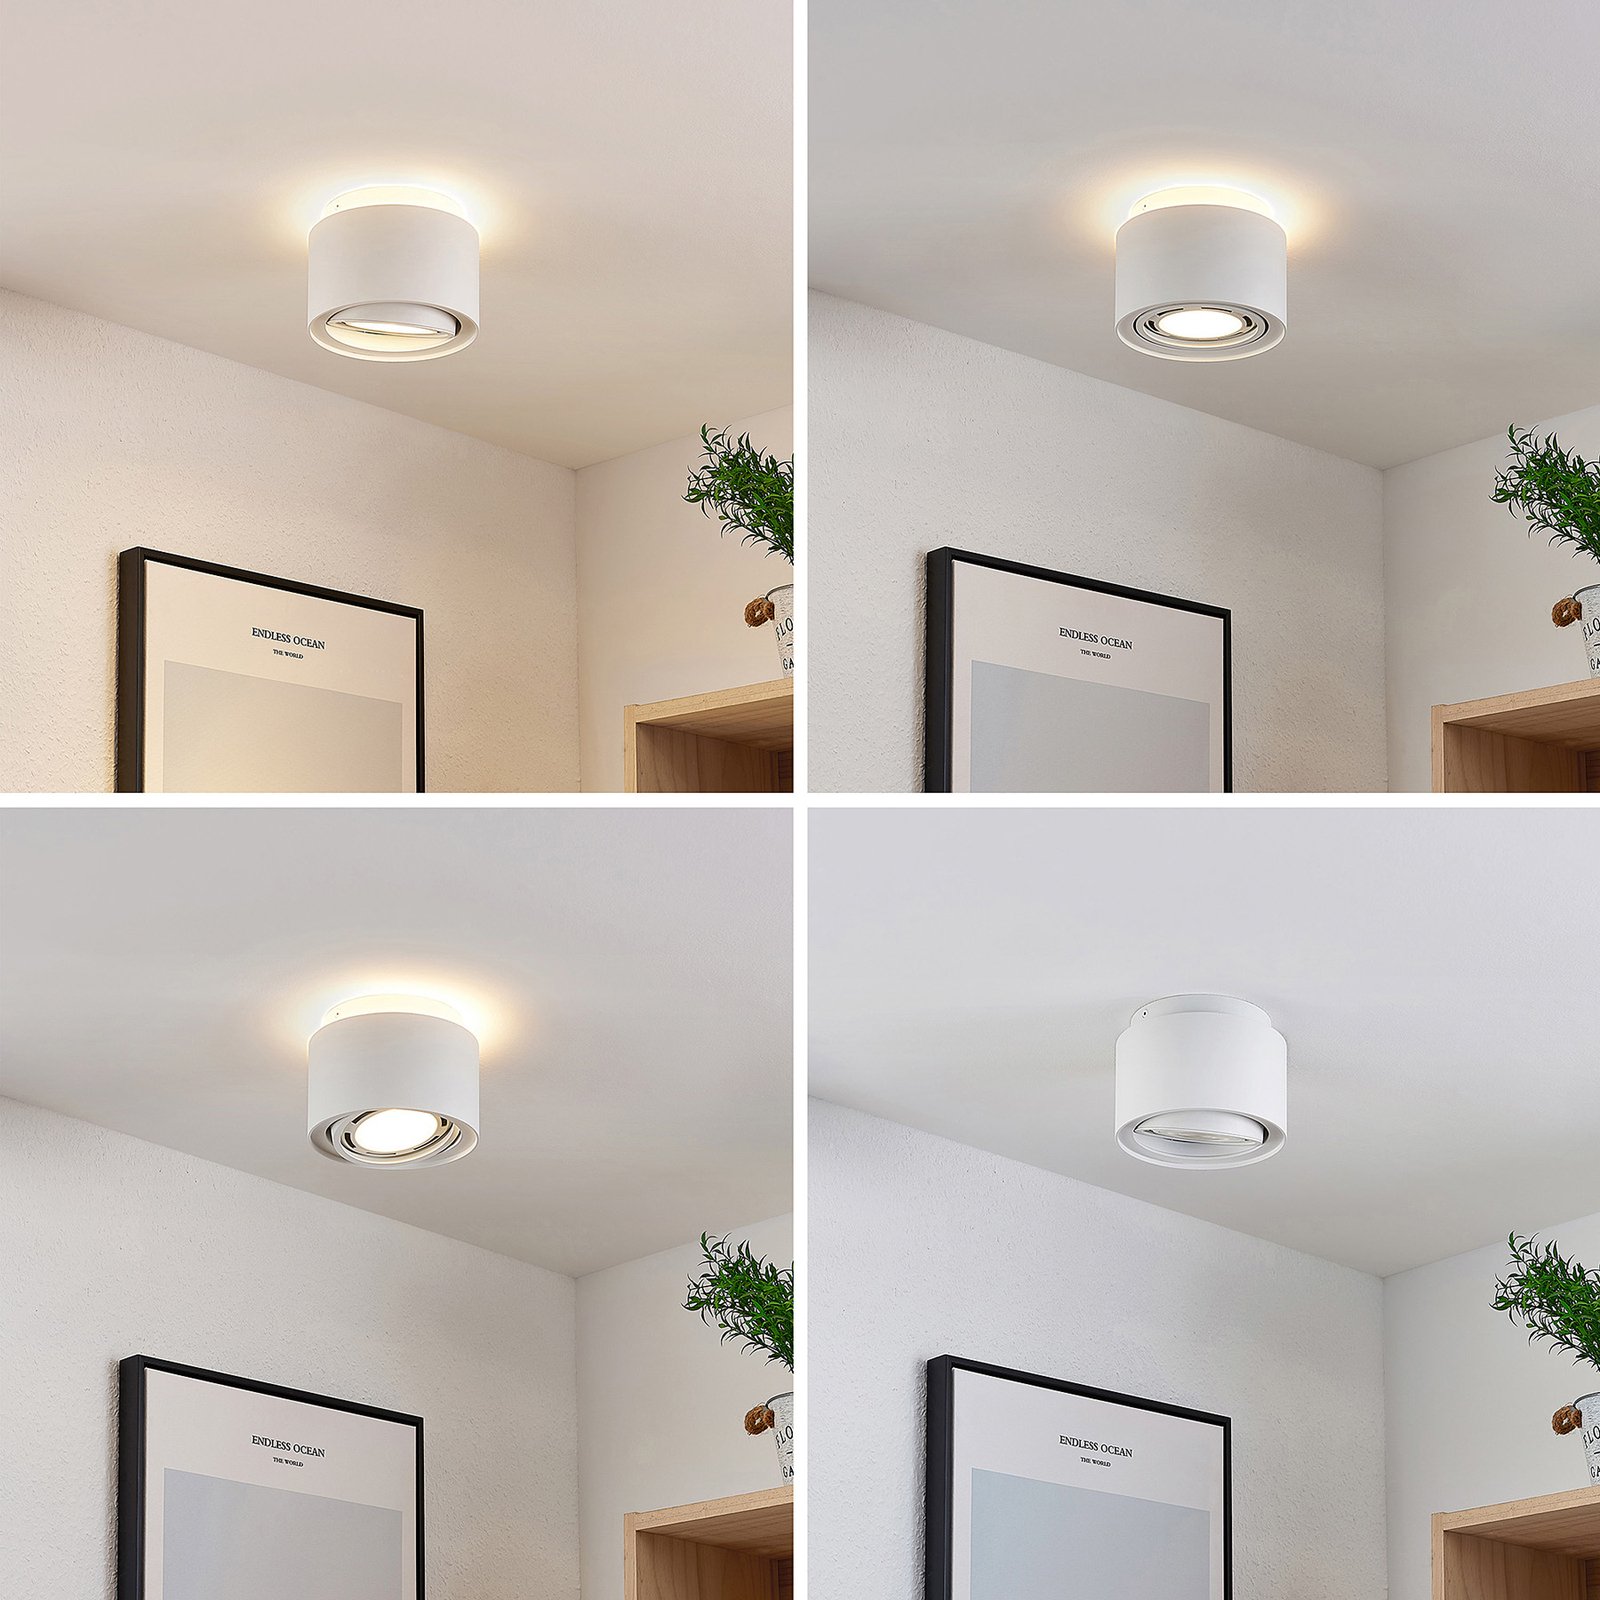 Arcchio Talima LED ceiling lamp round white 3x